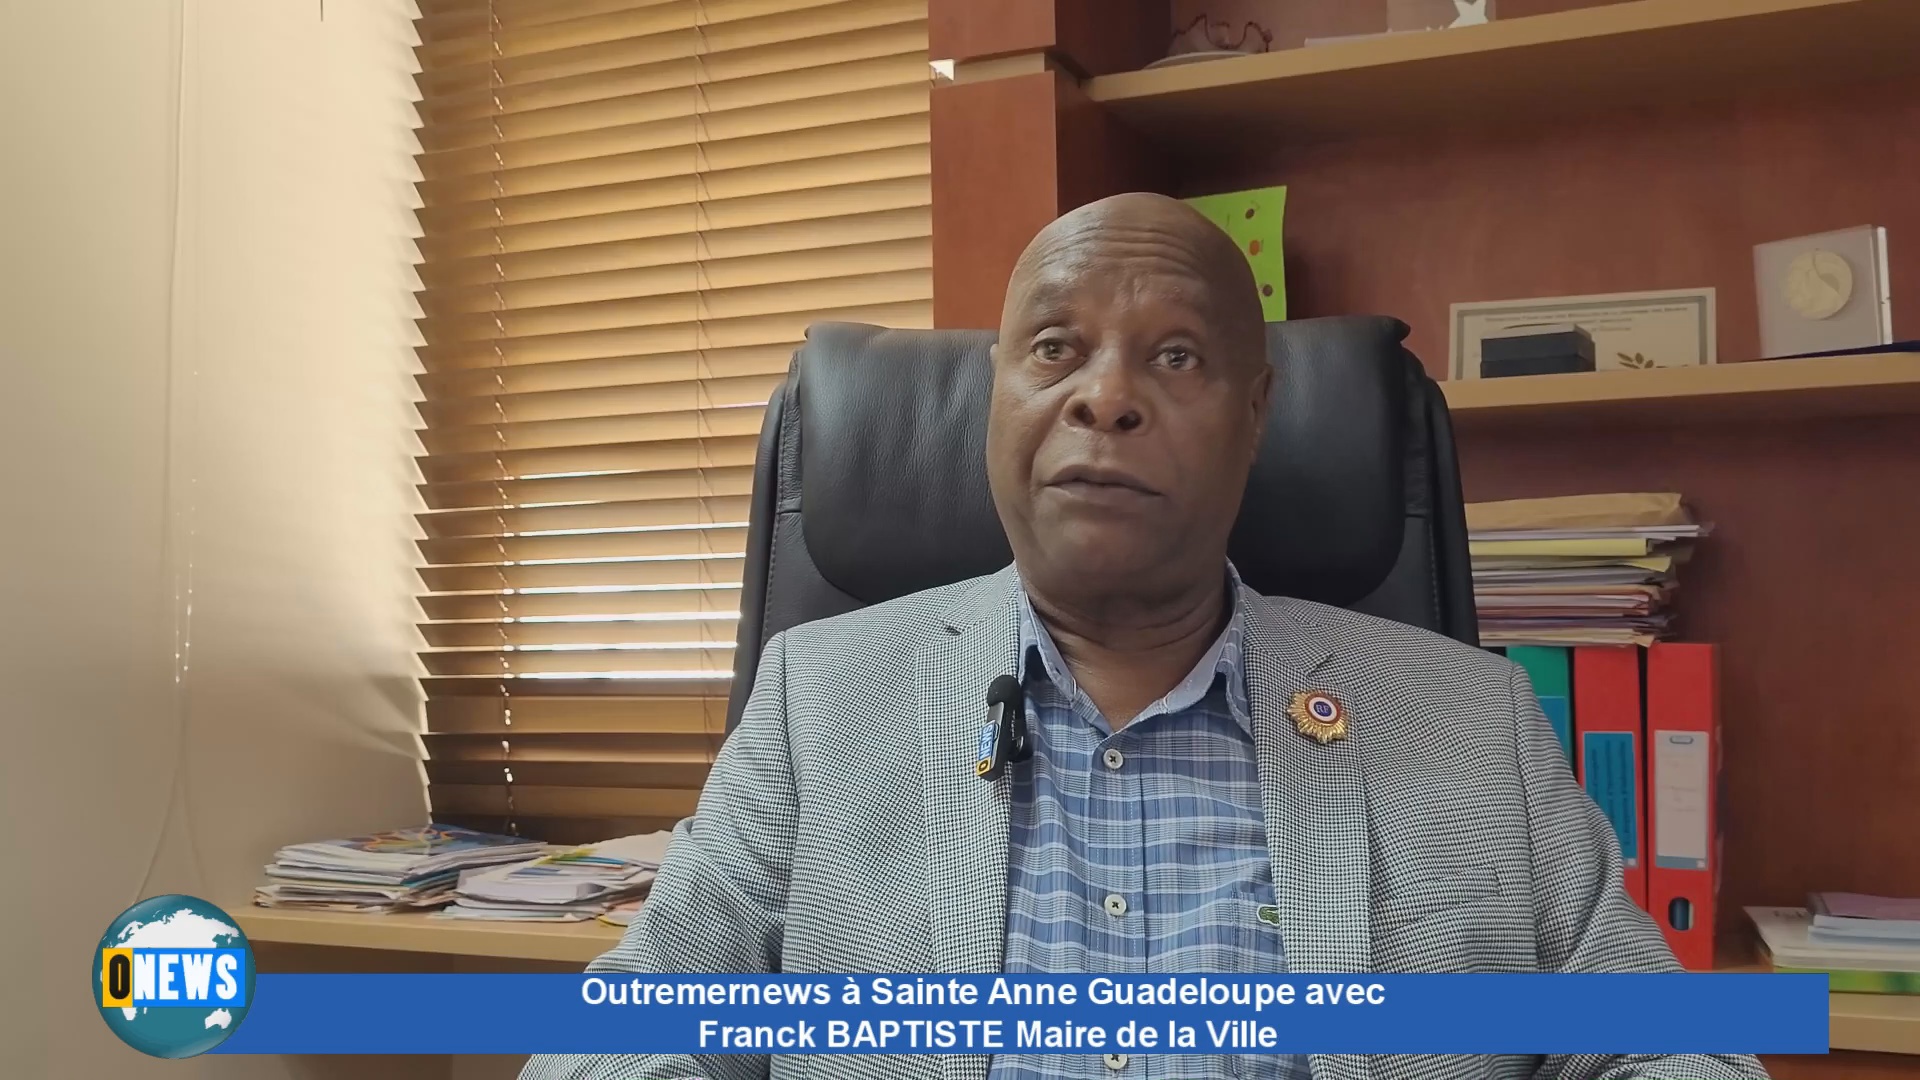 [Vidéo] Outremernews depuis Sainte Anne en Guadeloupe. Invité Franck BAPTISTE Maire de la Ville